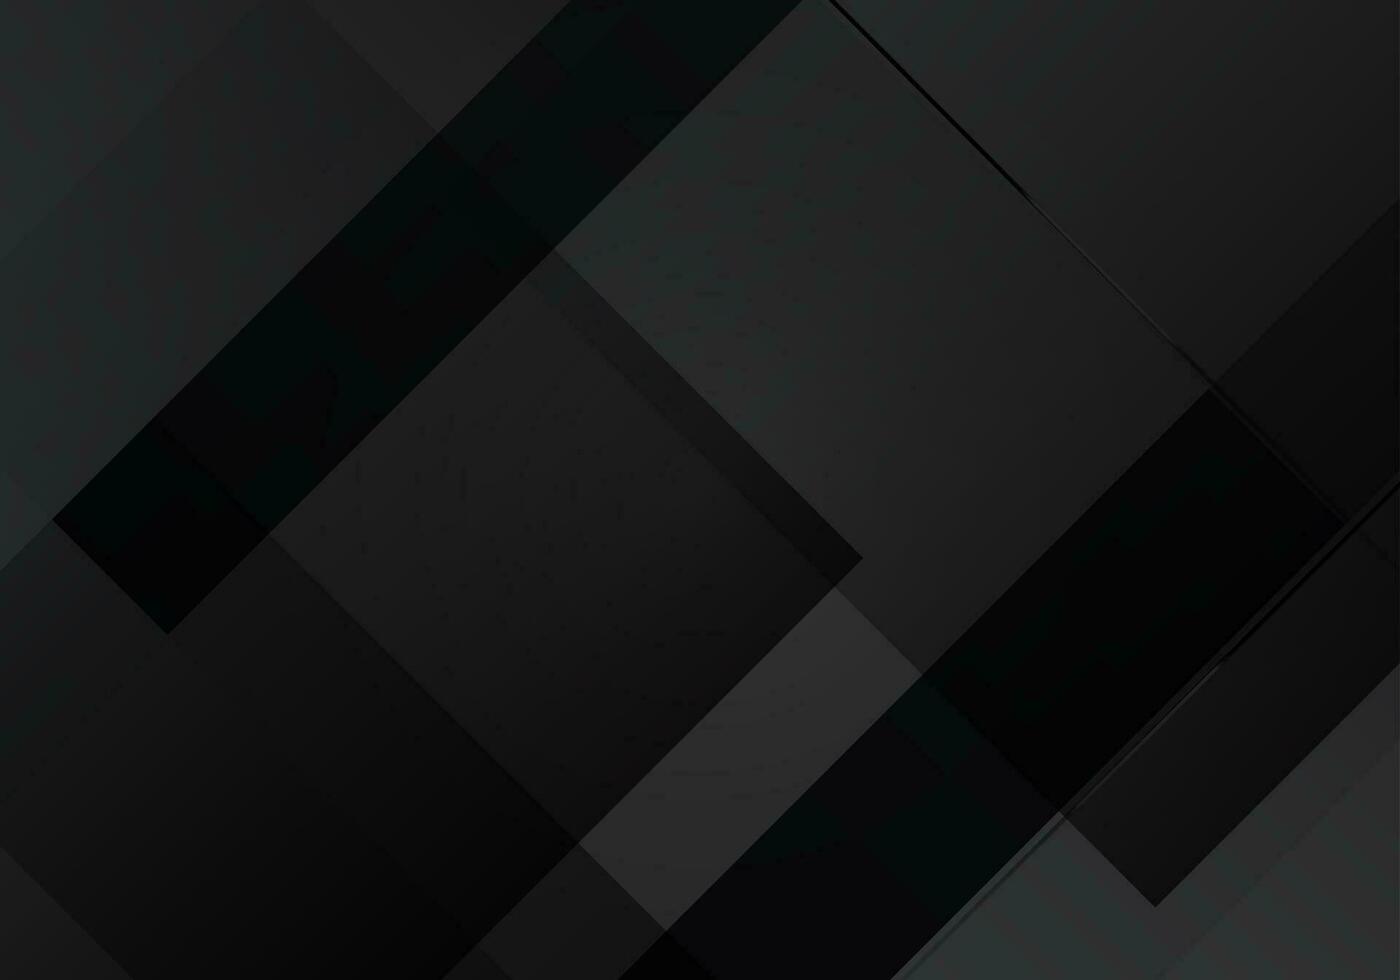 scuro geometrico nero astratto sfondo elegante design pattern vettore